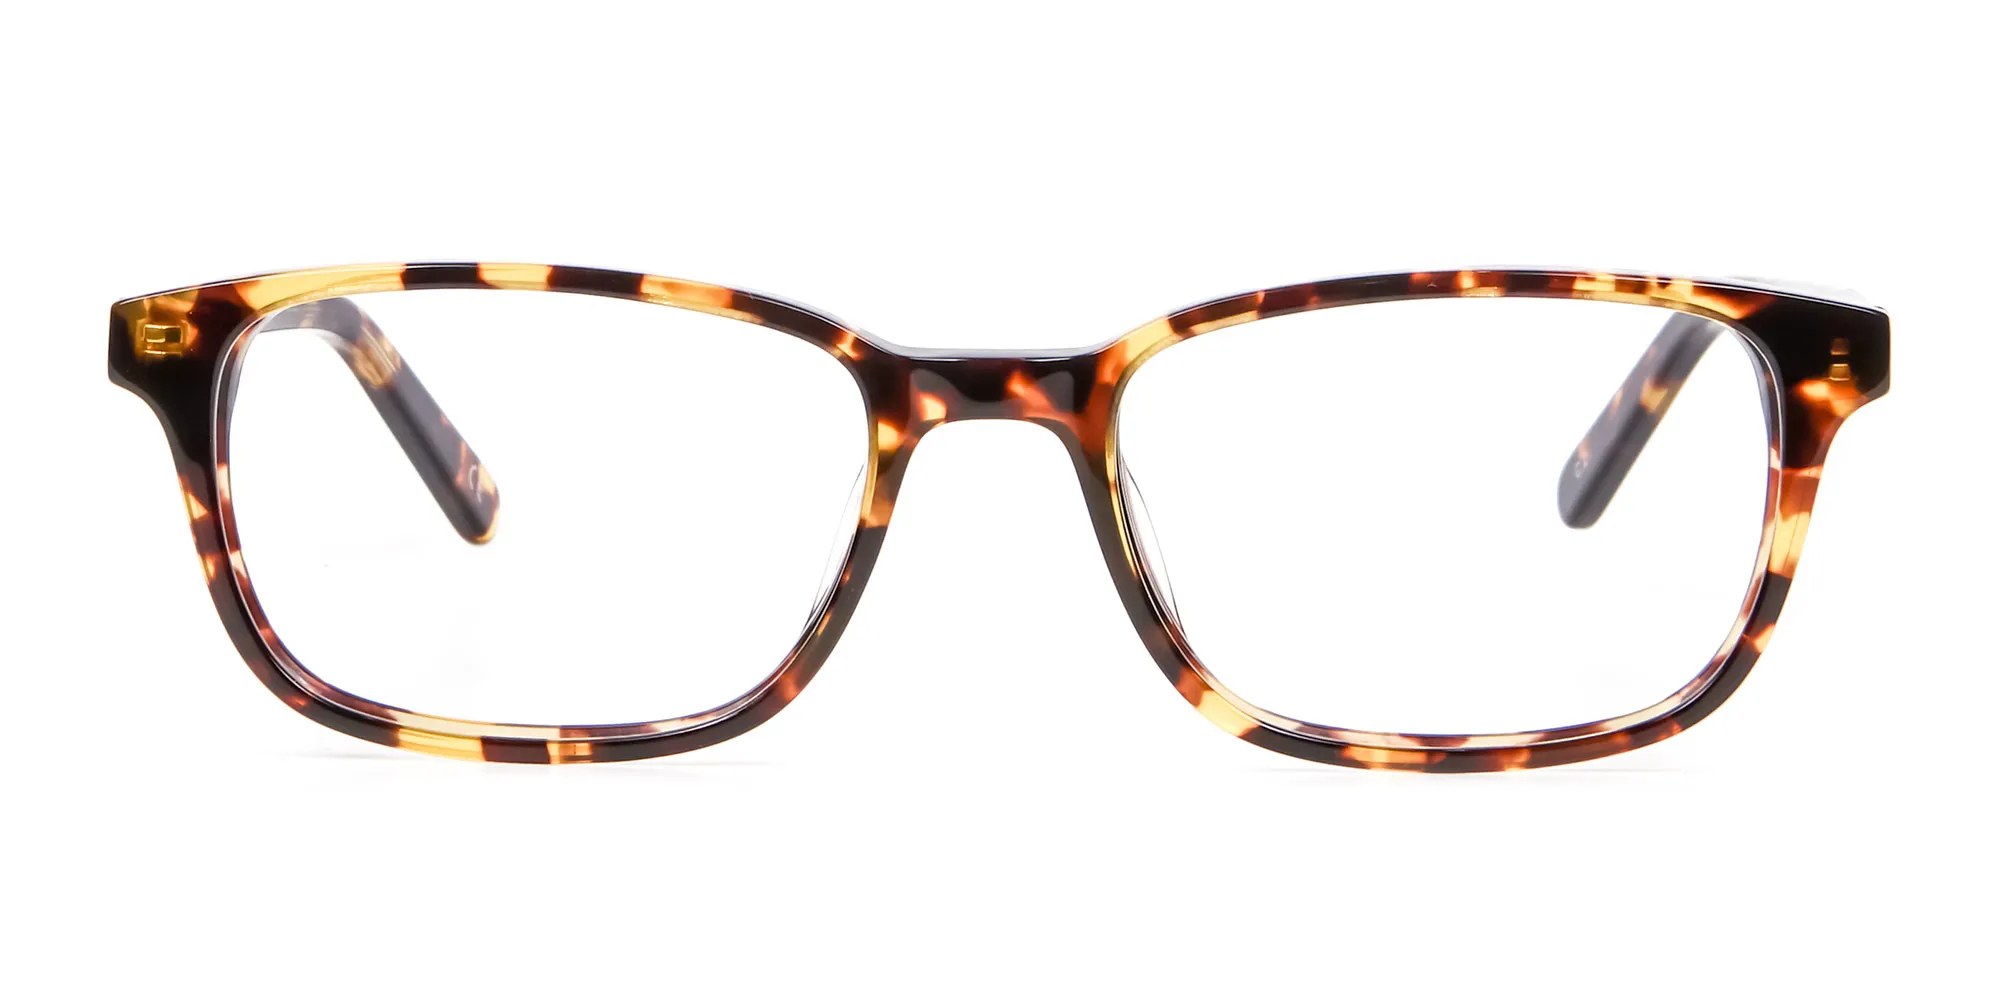 Havana & Tortoiseshell Square Glasses - 1